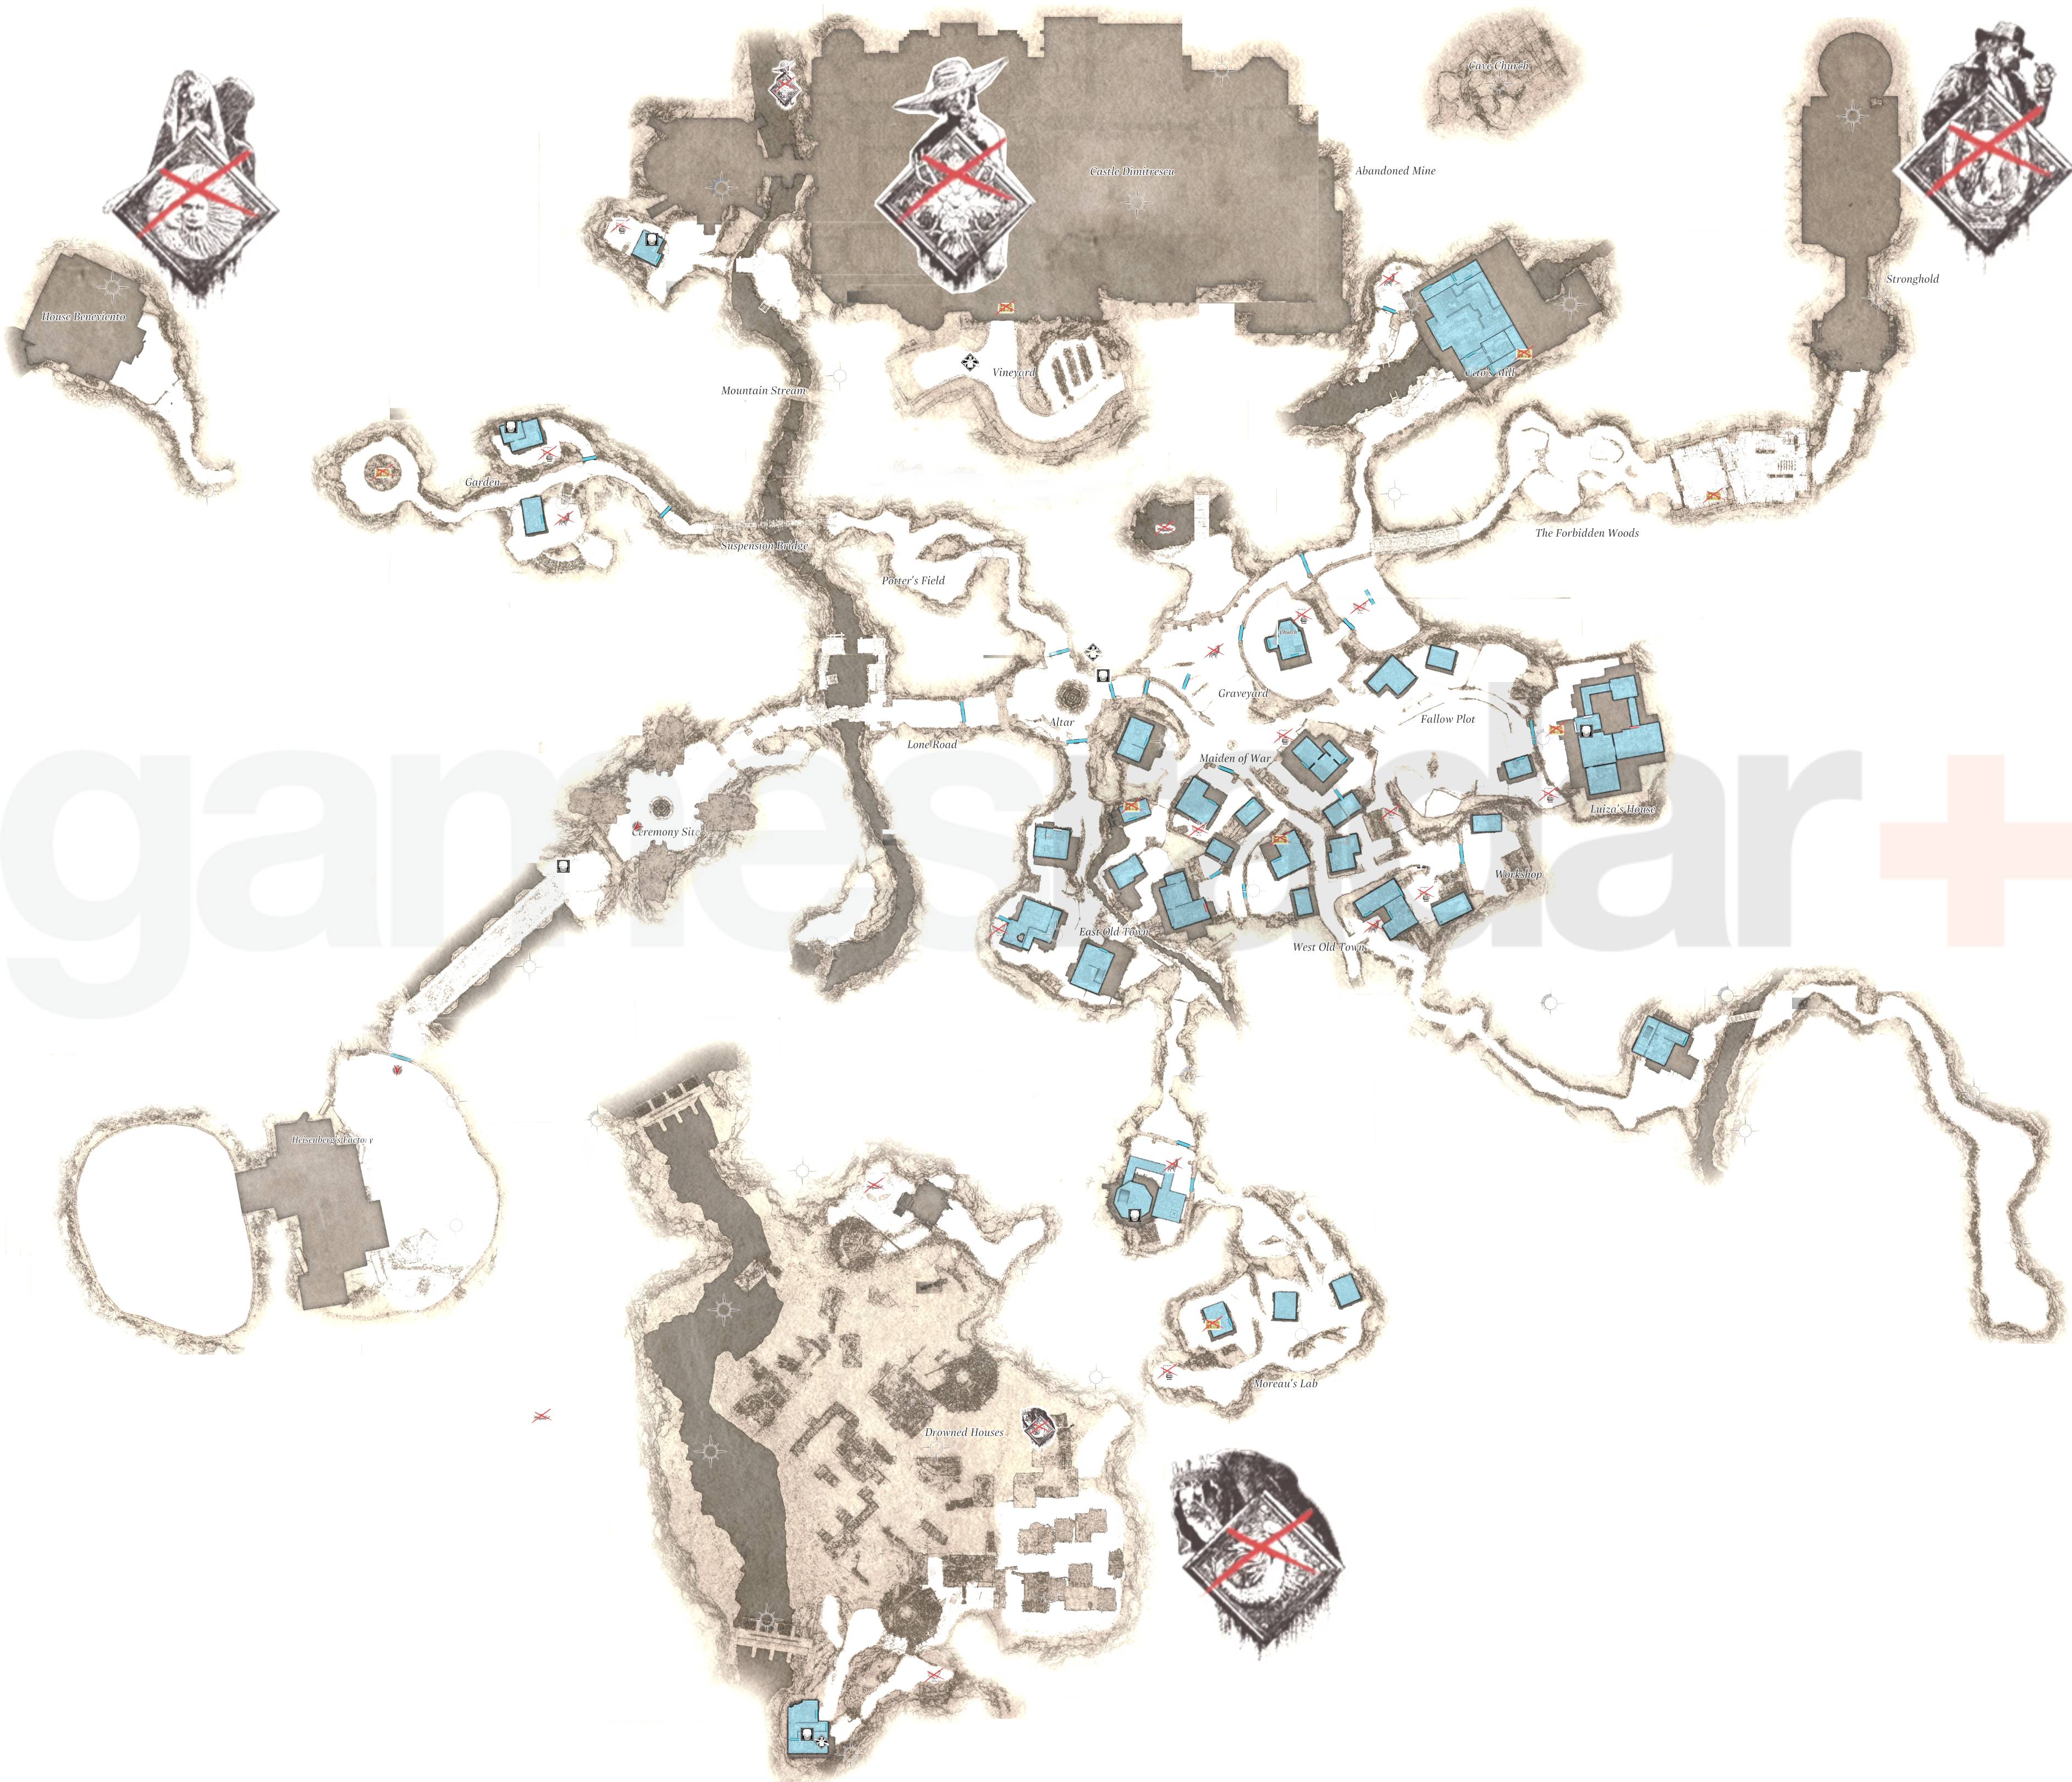 resident evil 4 village map